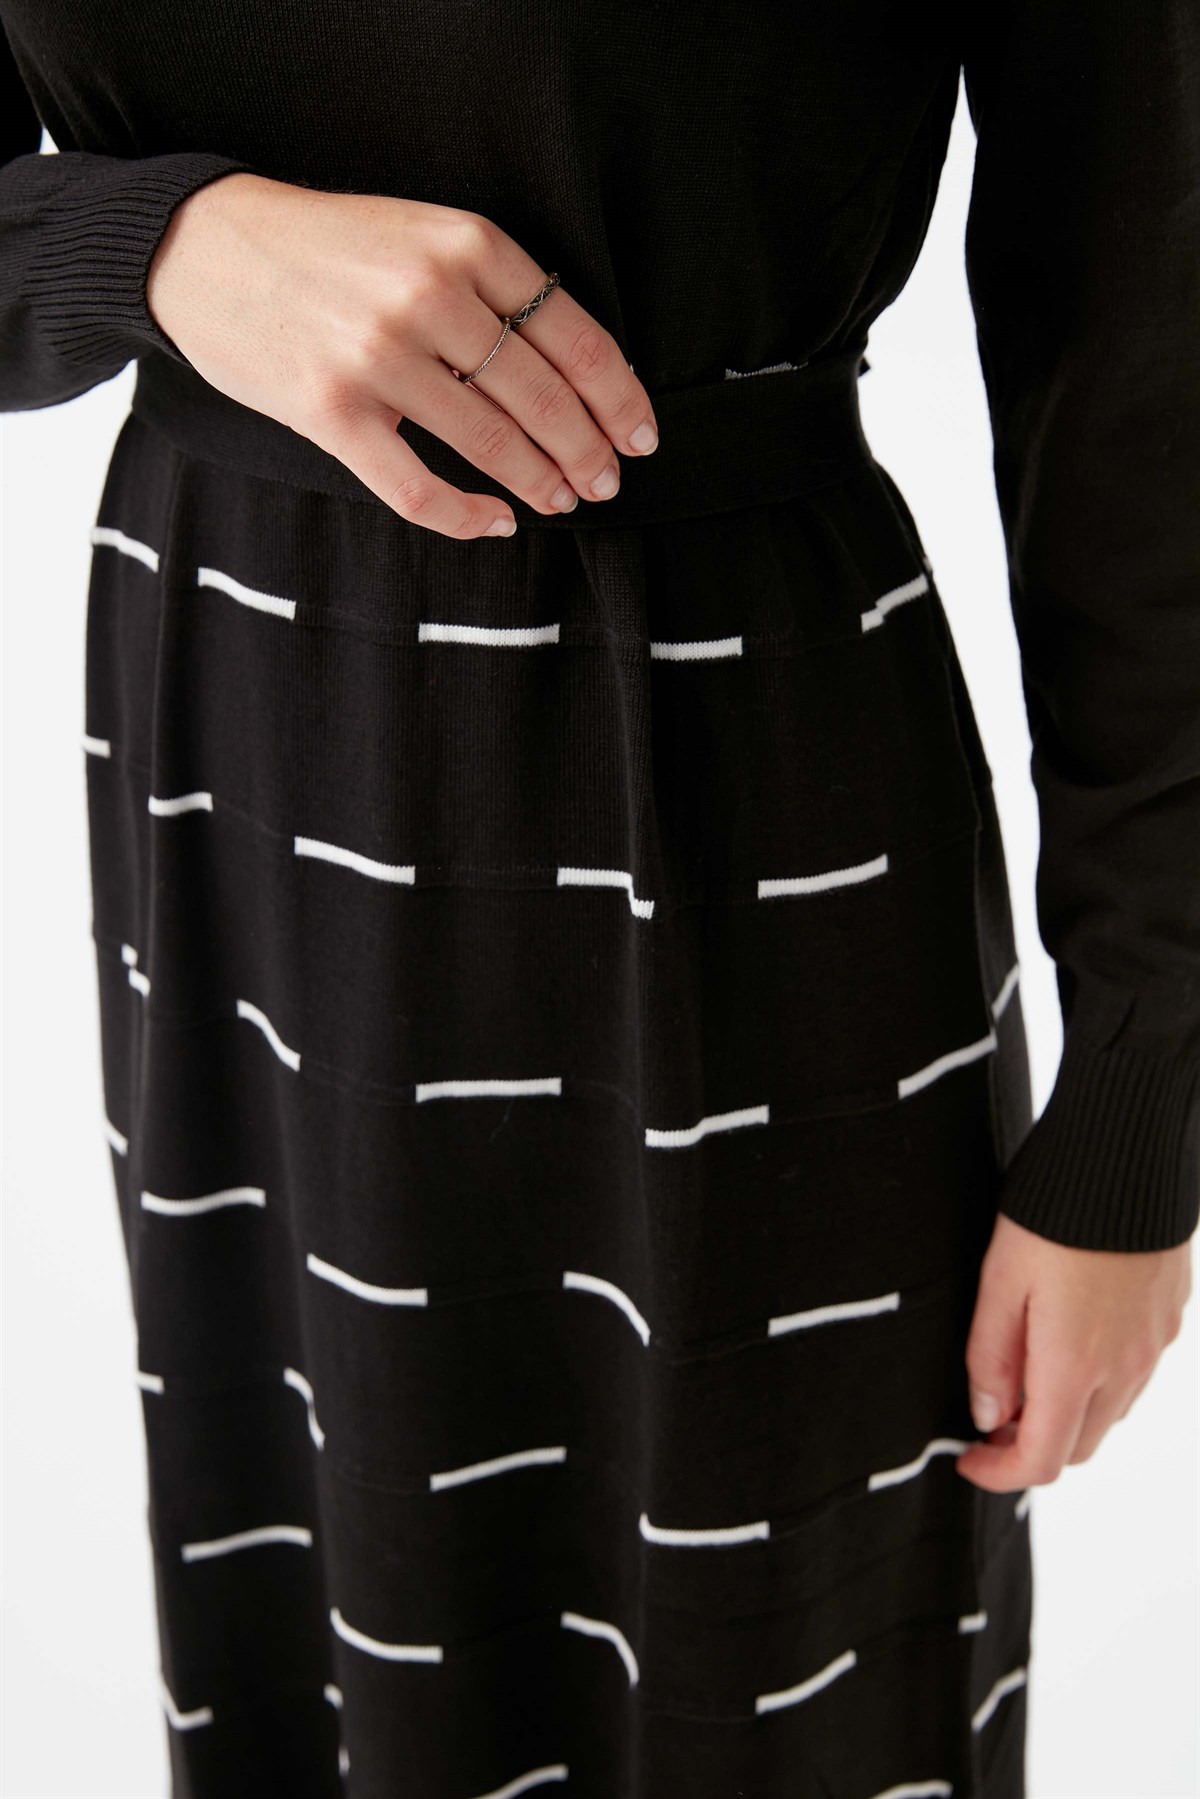 Çizgi Desen Kuşaklı Triko Elbise - Siyah